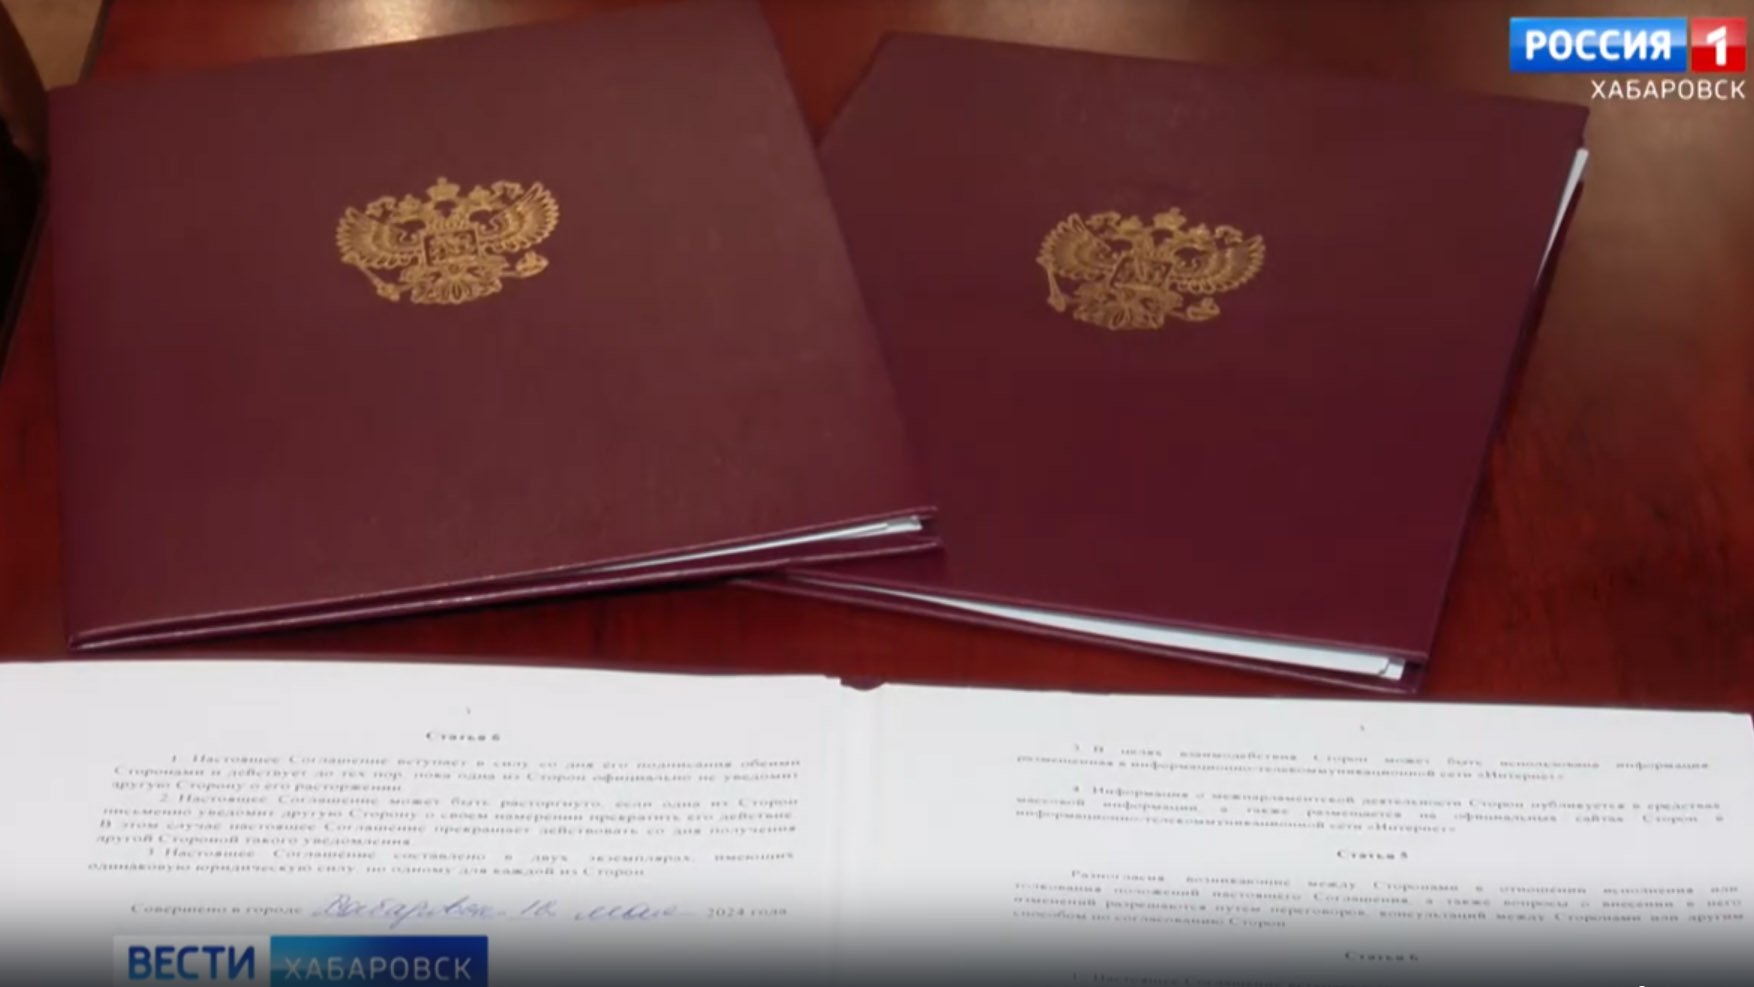 Видеосюжет «В Хабаровске подписано соглашение между Законодательной Думой и Народным советом ДНР»